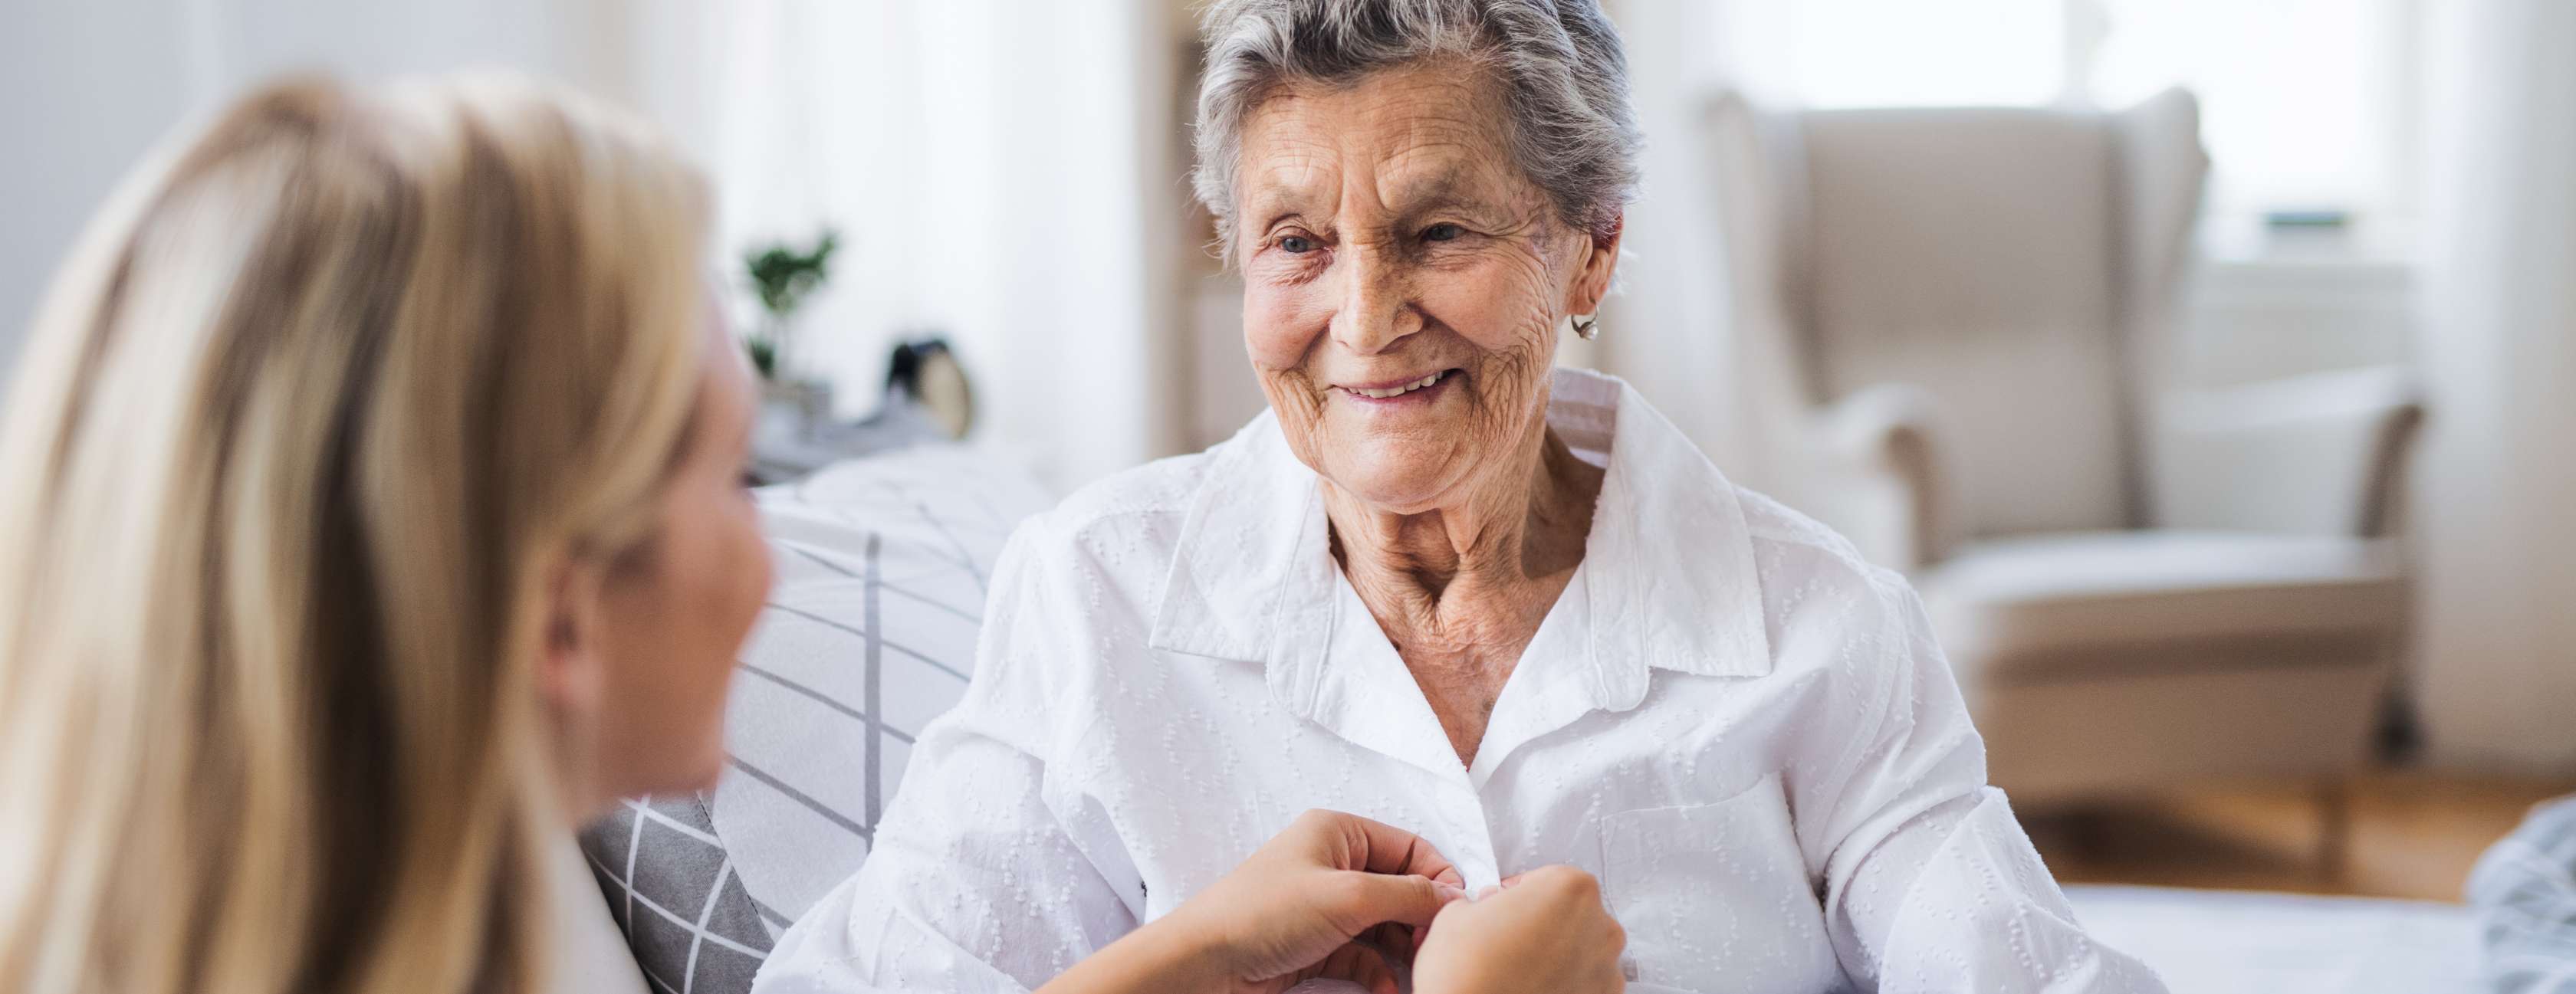 Hände einer Pflegerin umfassen Hand einer älteren Dame, die sich auf Gehstock stützt.